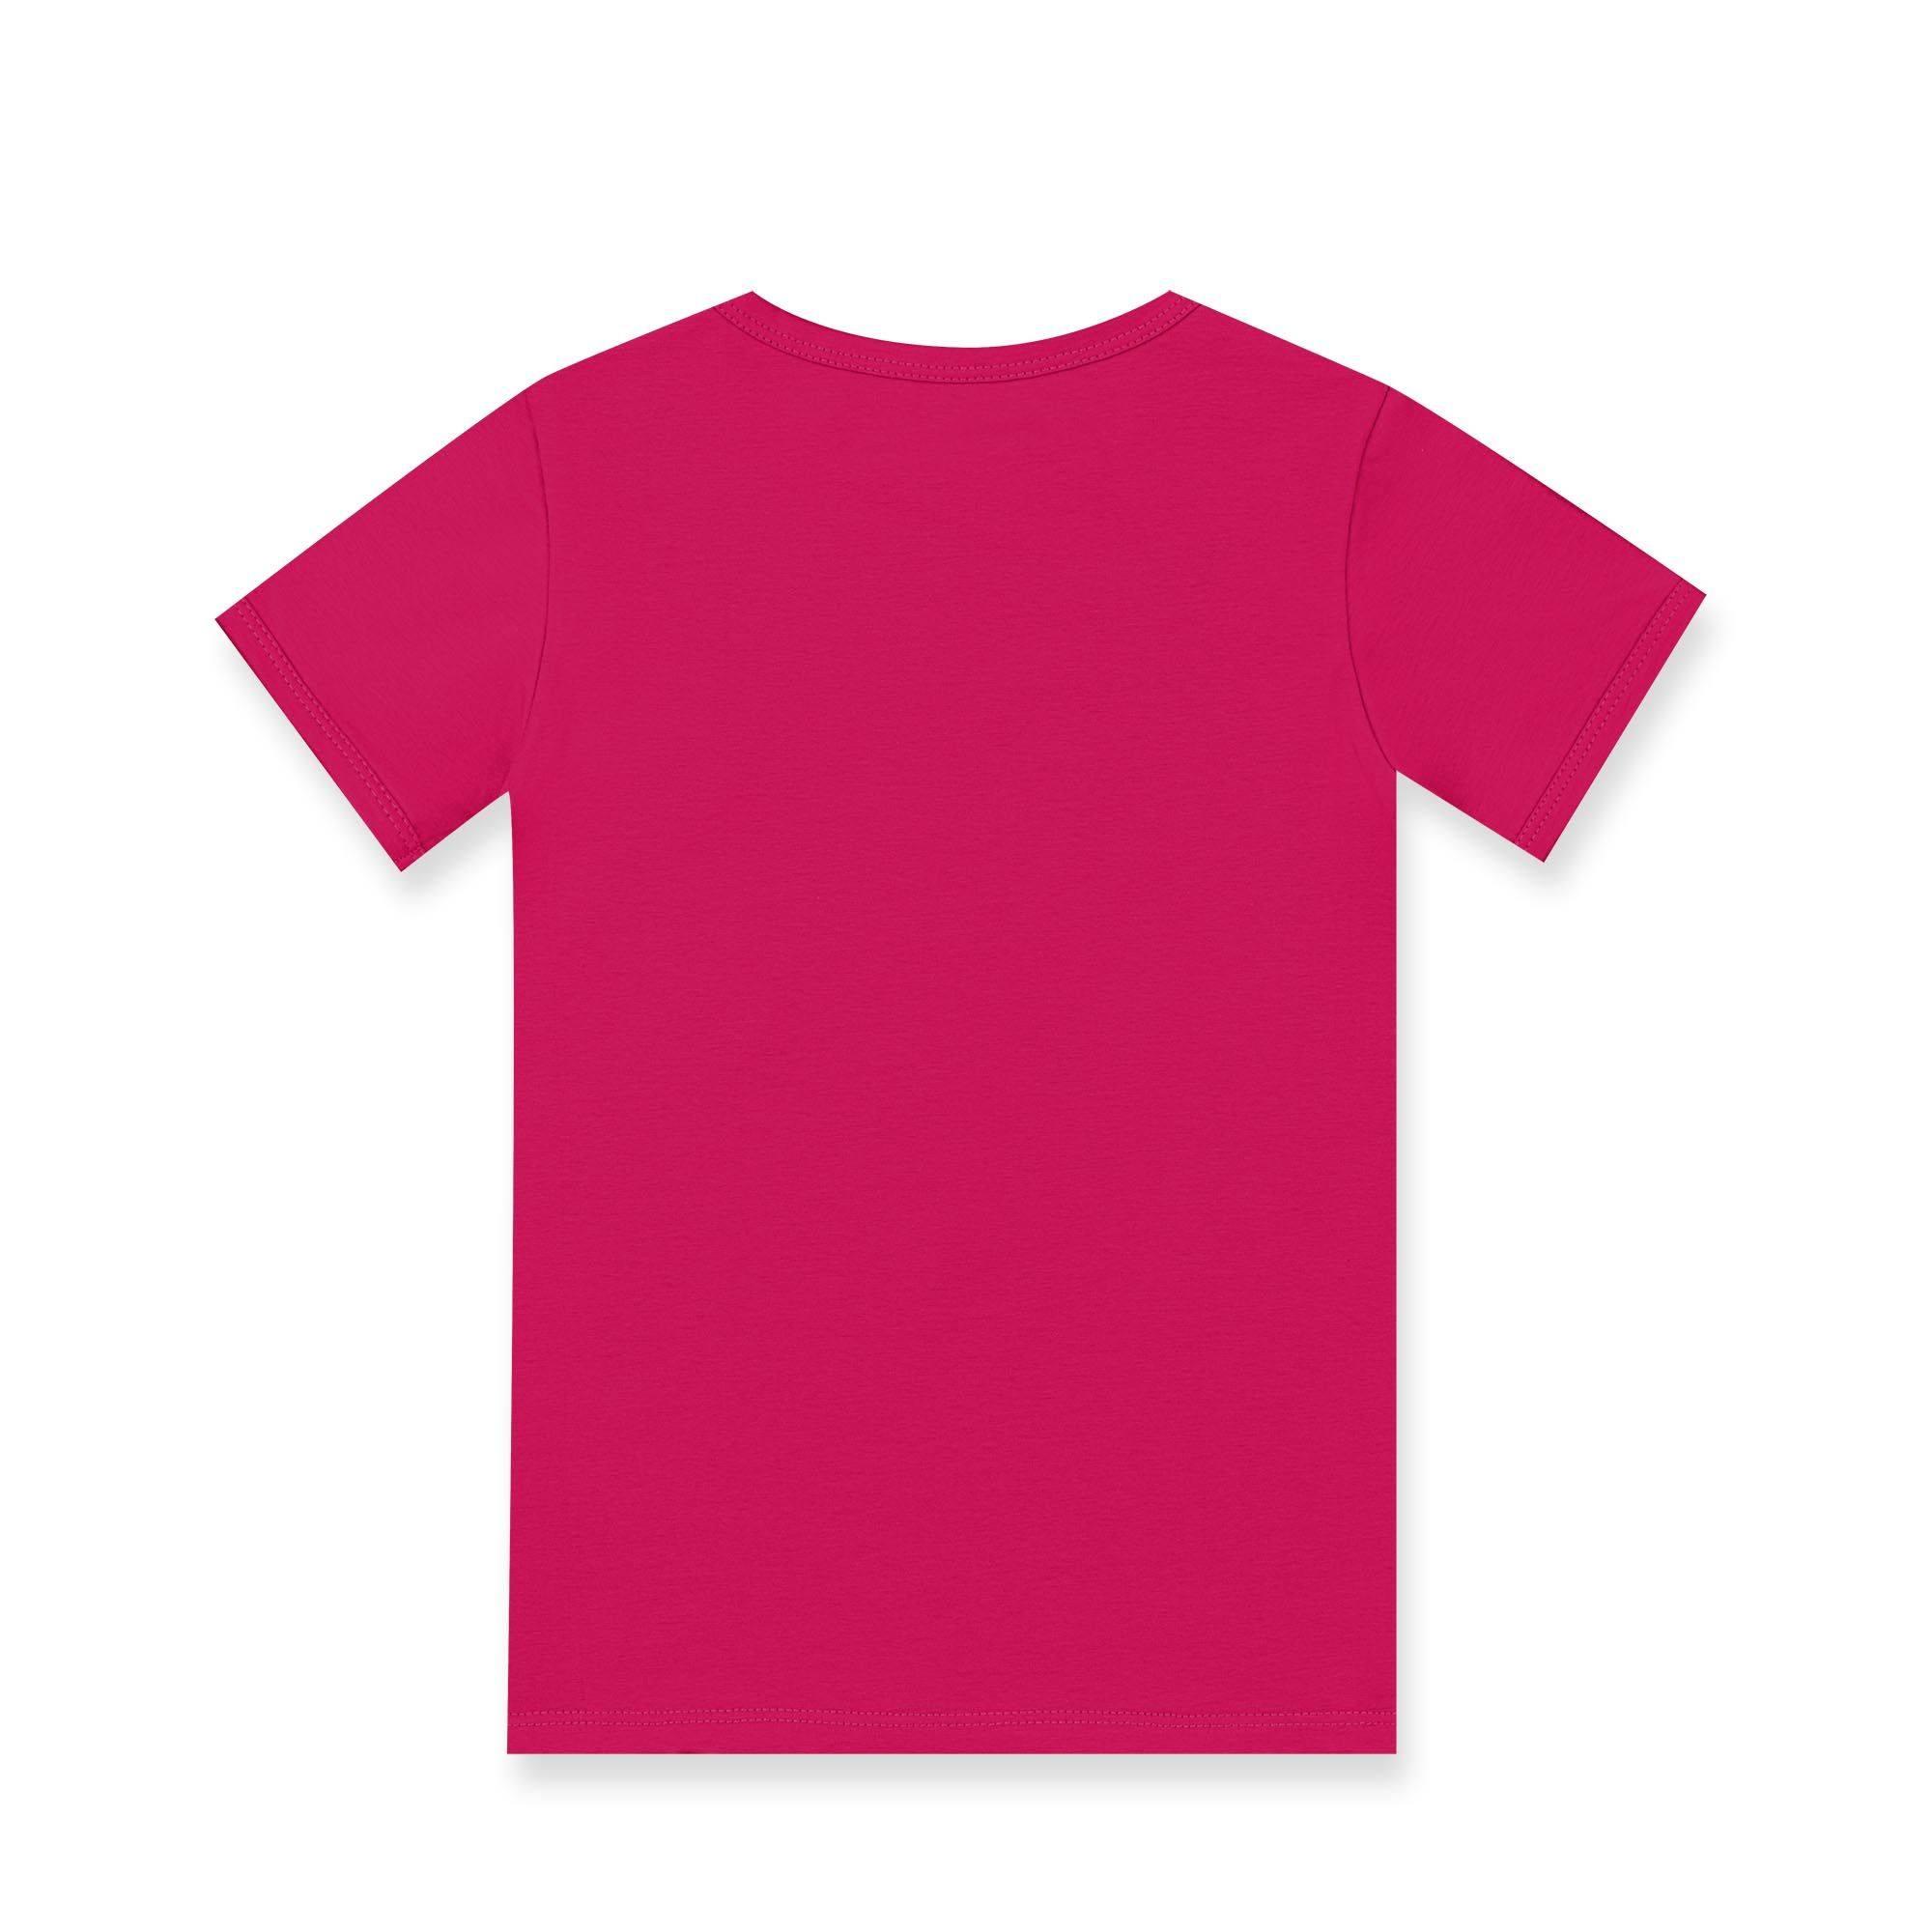 Pudroworóżowo-różowa koszulka dwukolorowa